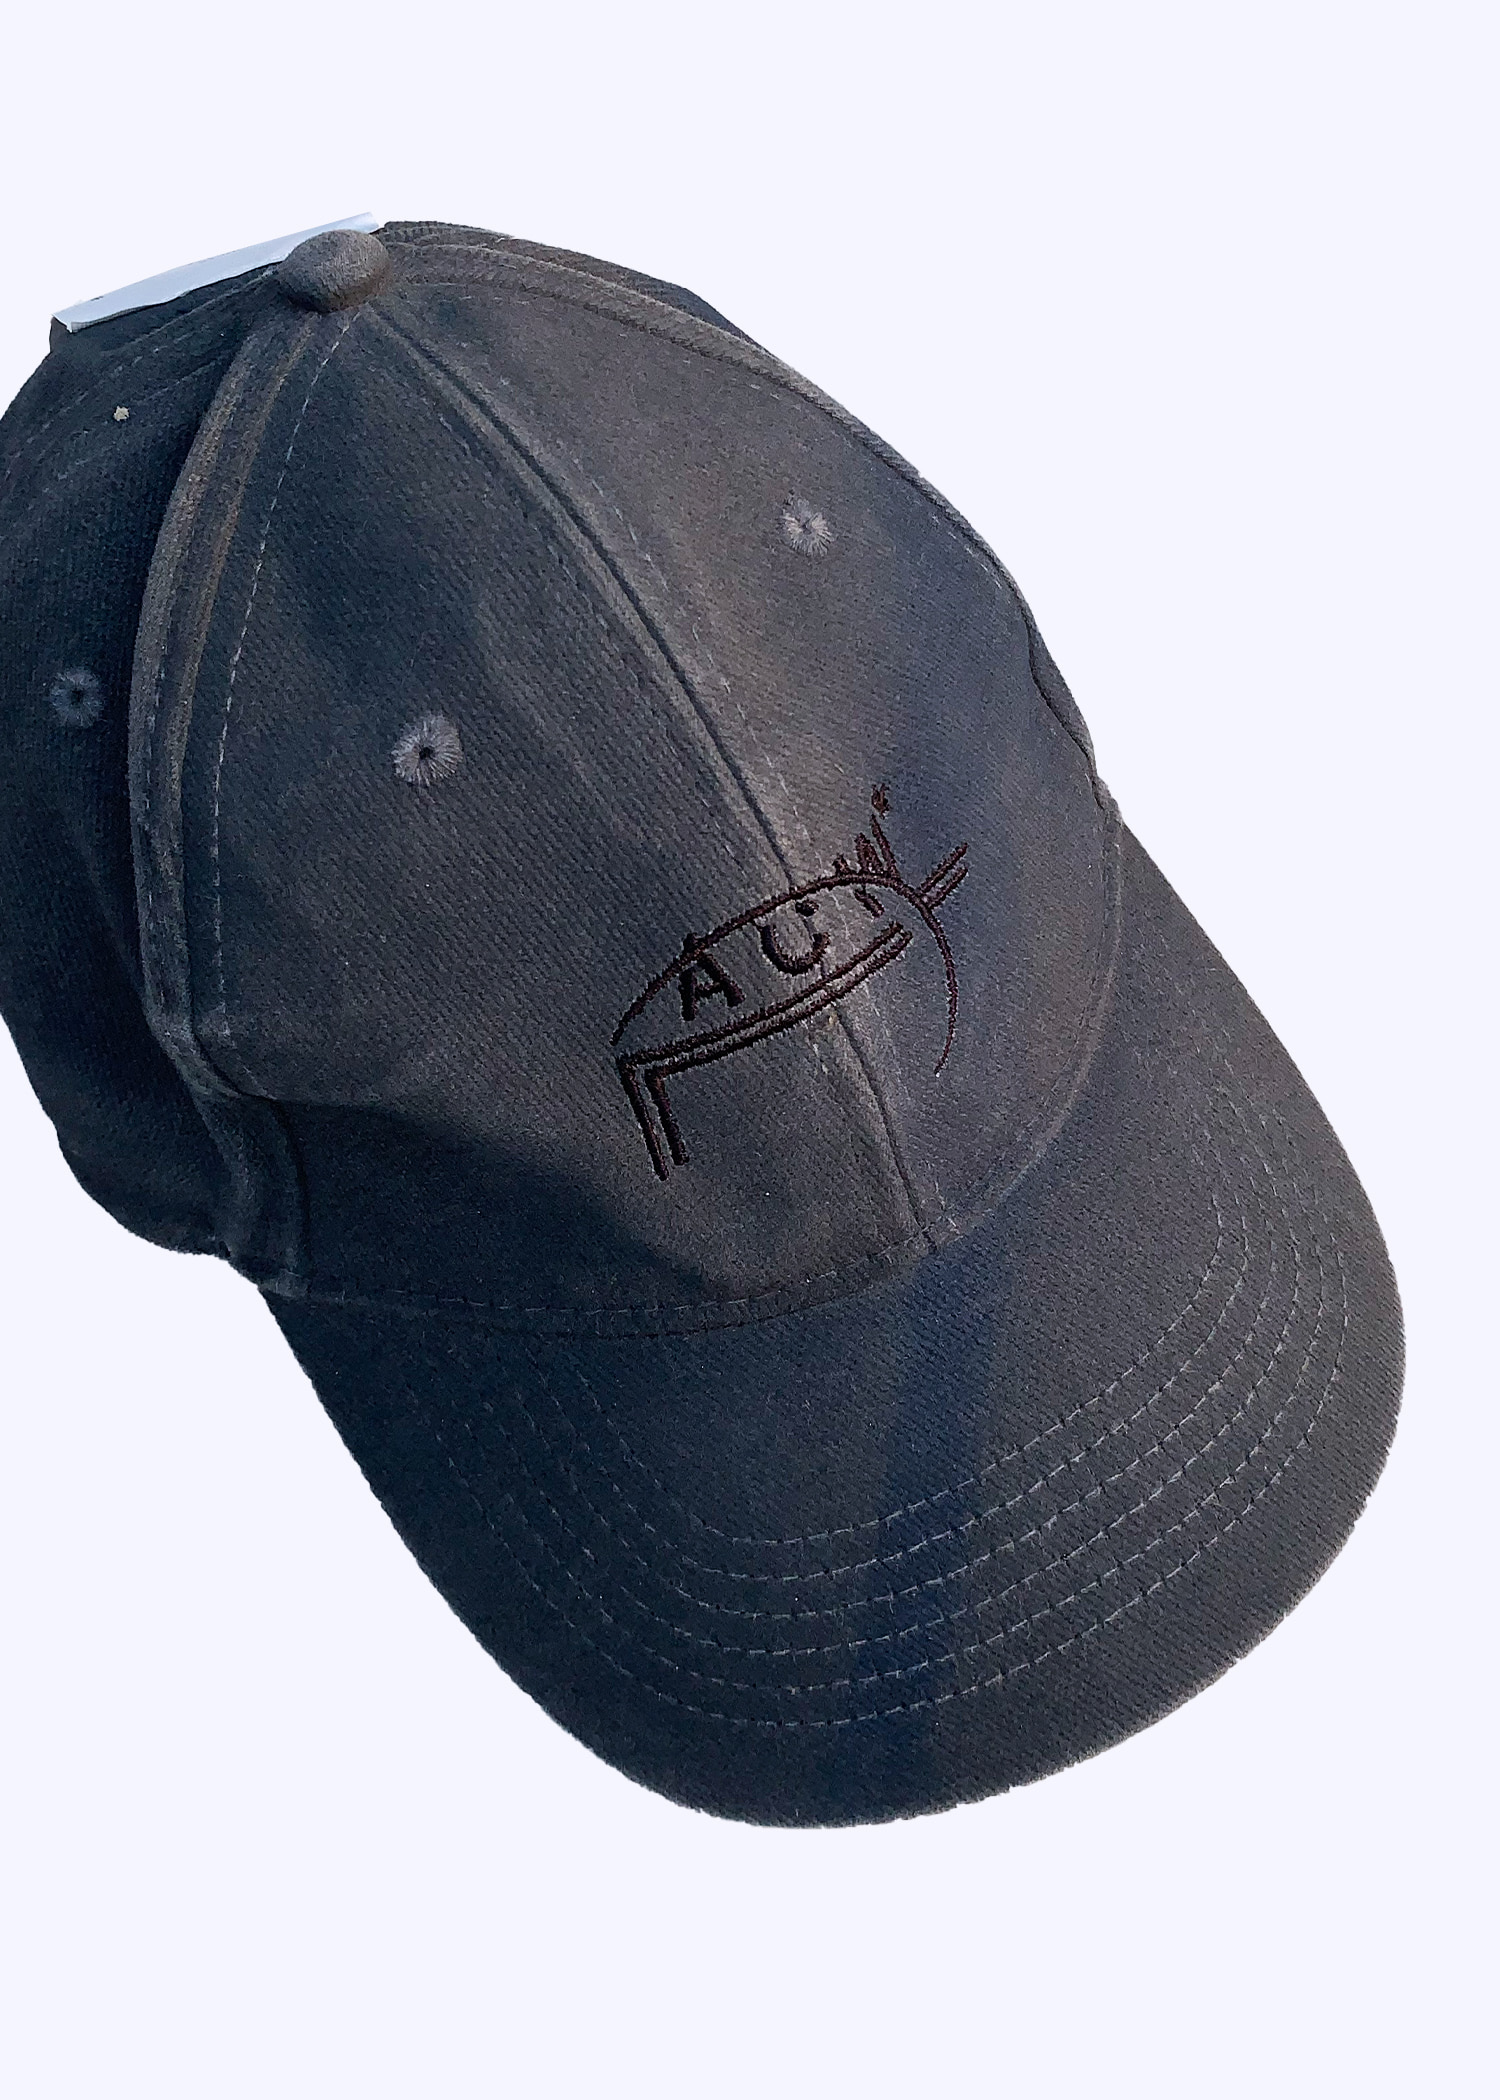 A-COLD-WALL cap